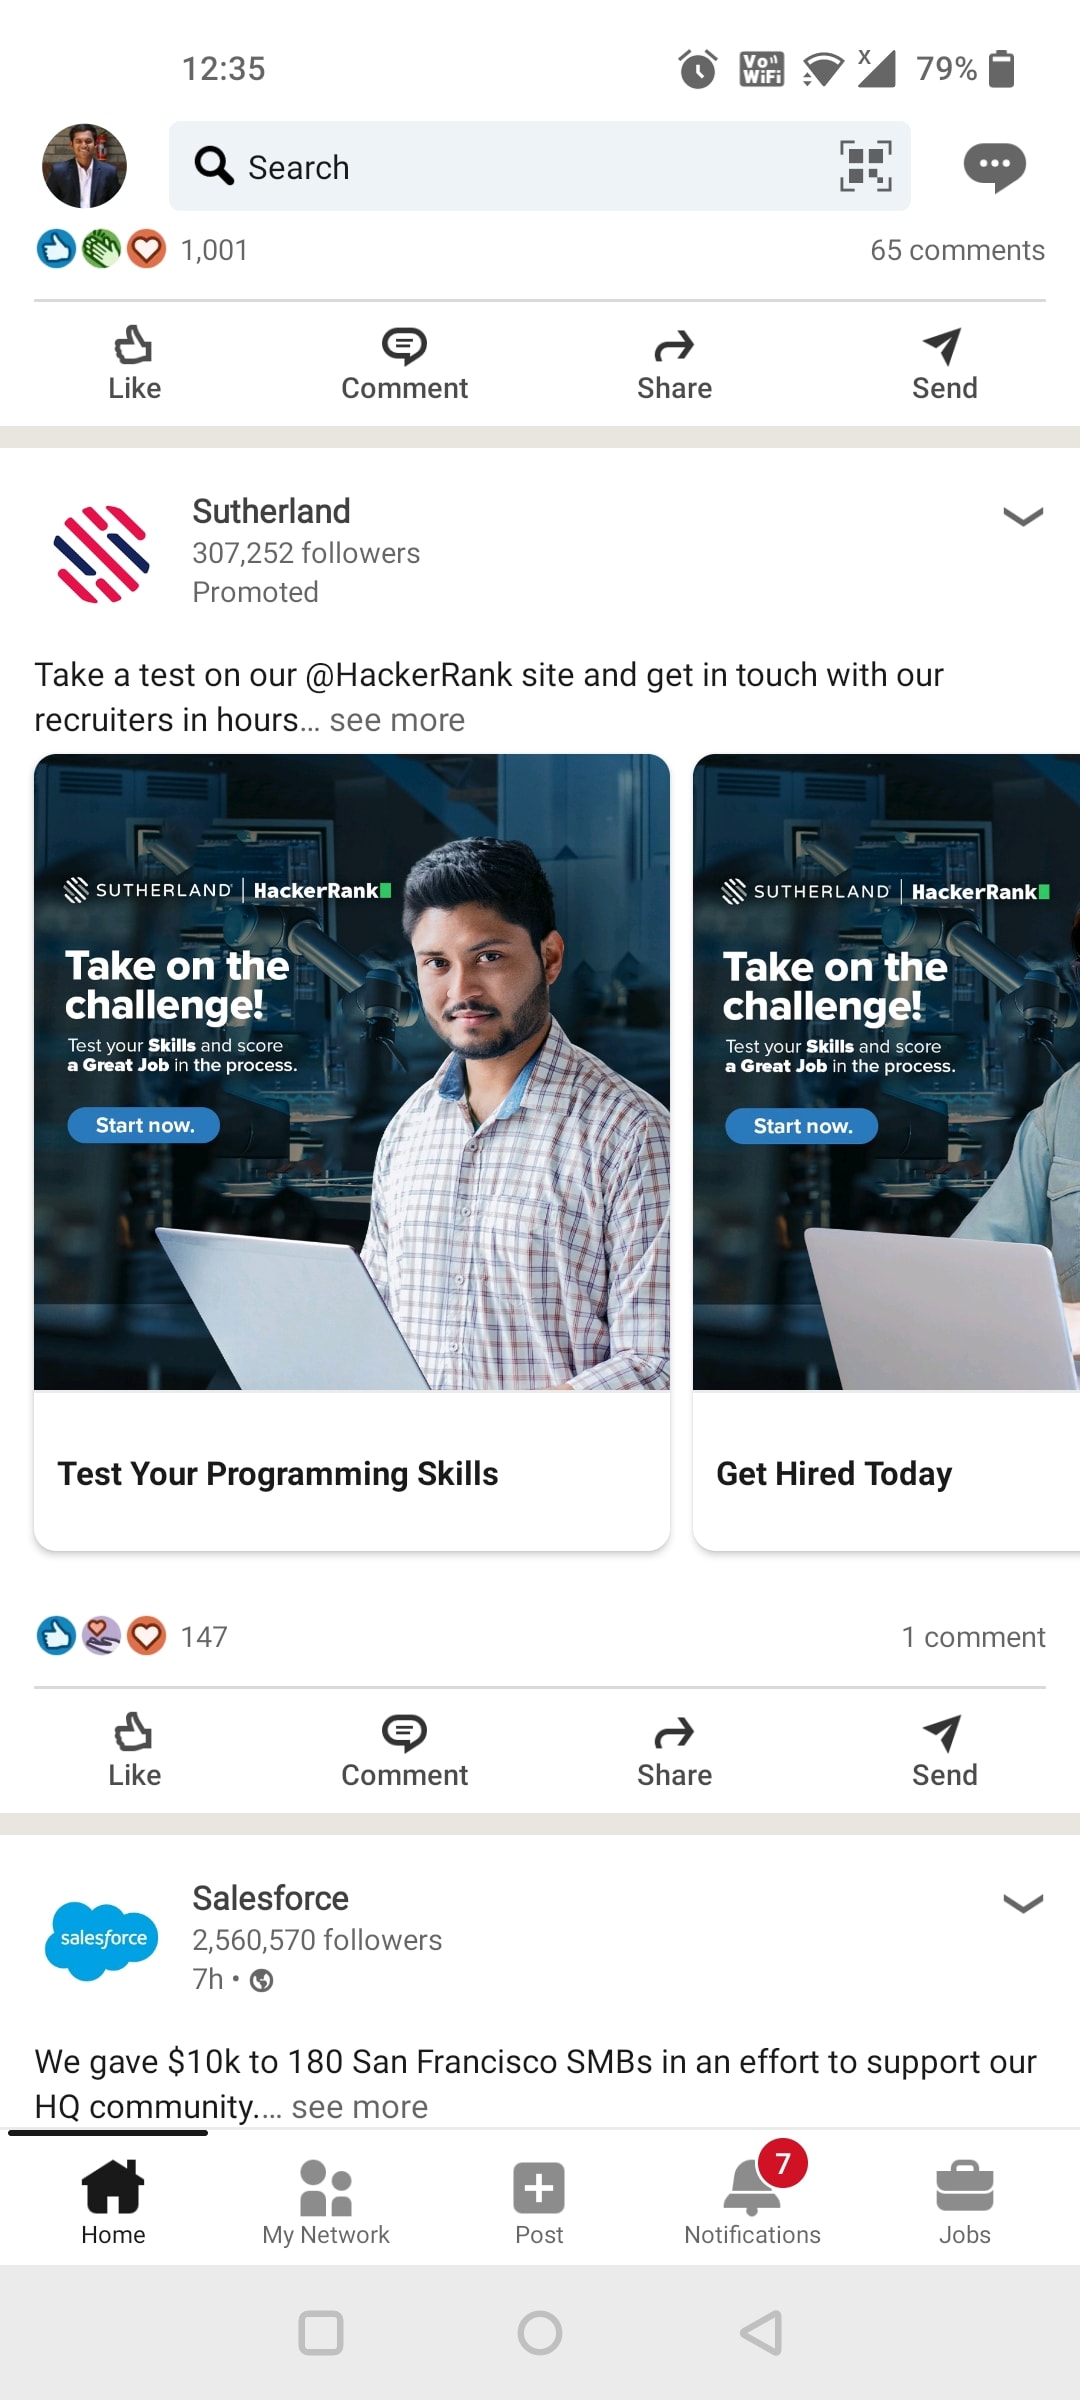 LinkedIn-Carousel Advertising-Option 2